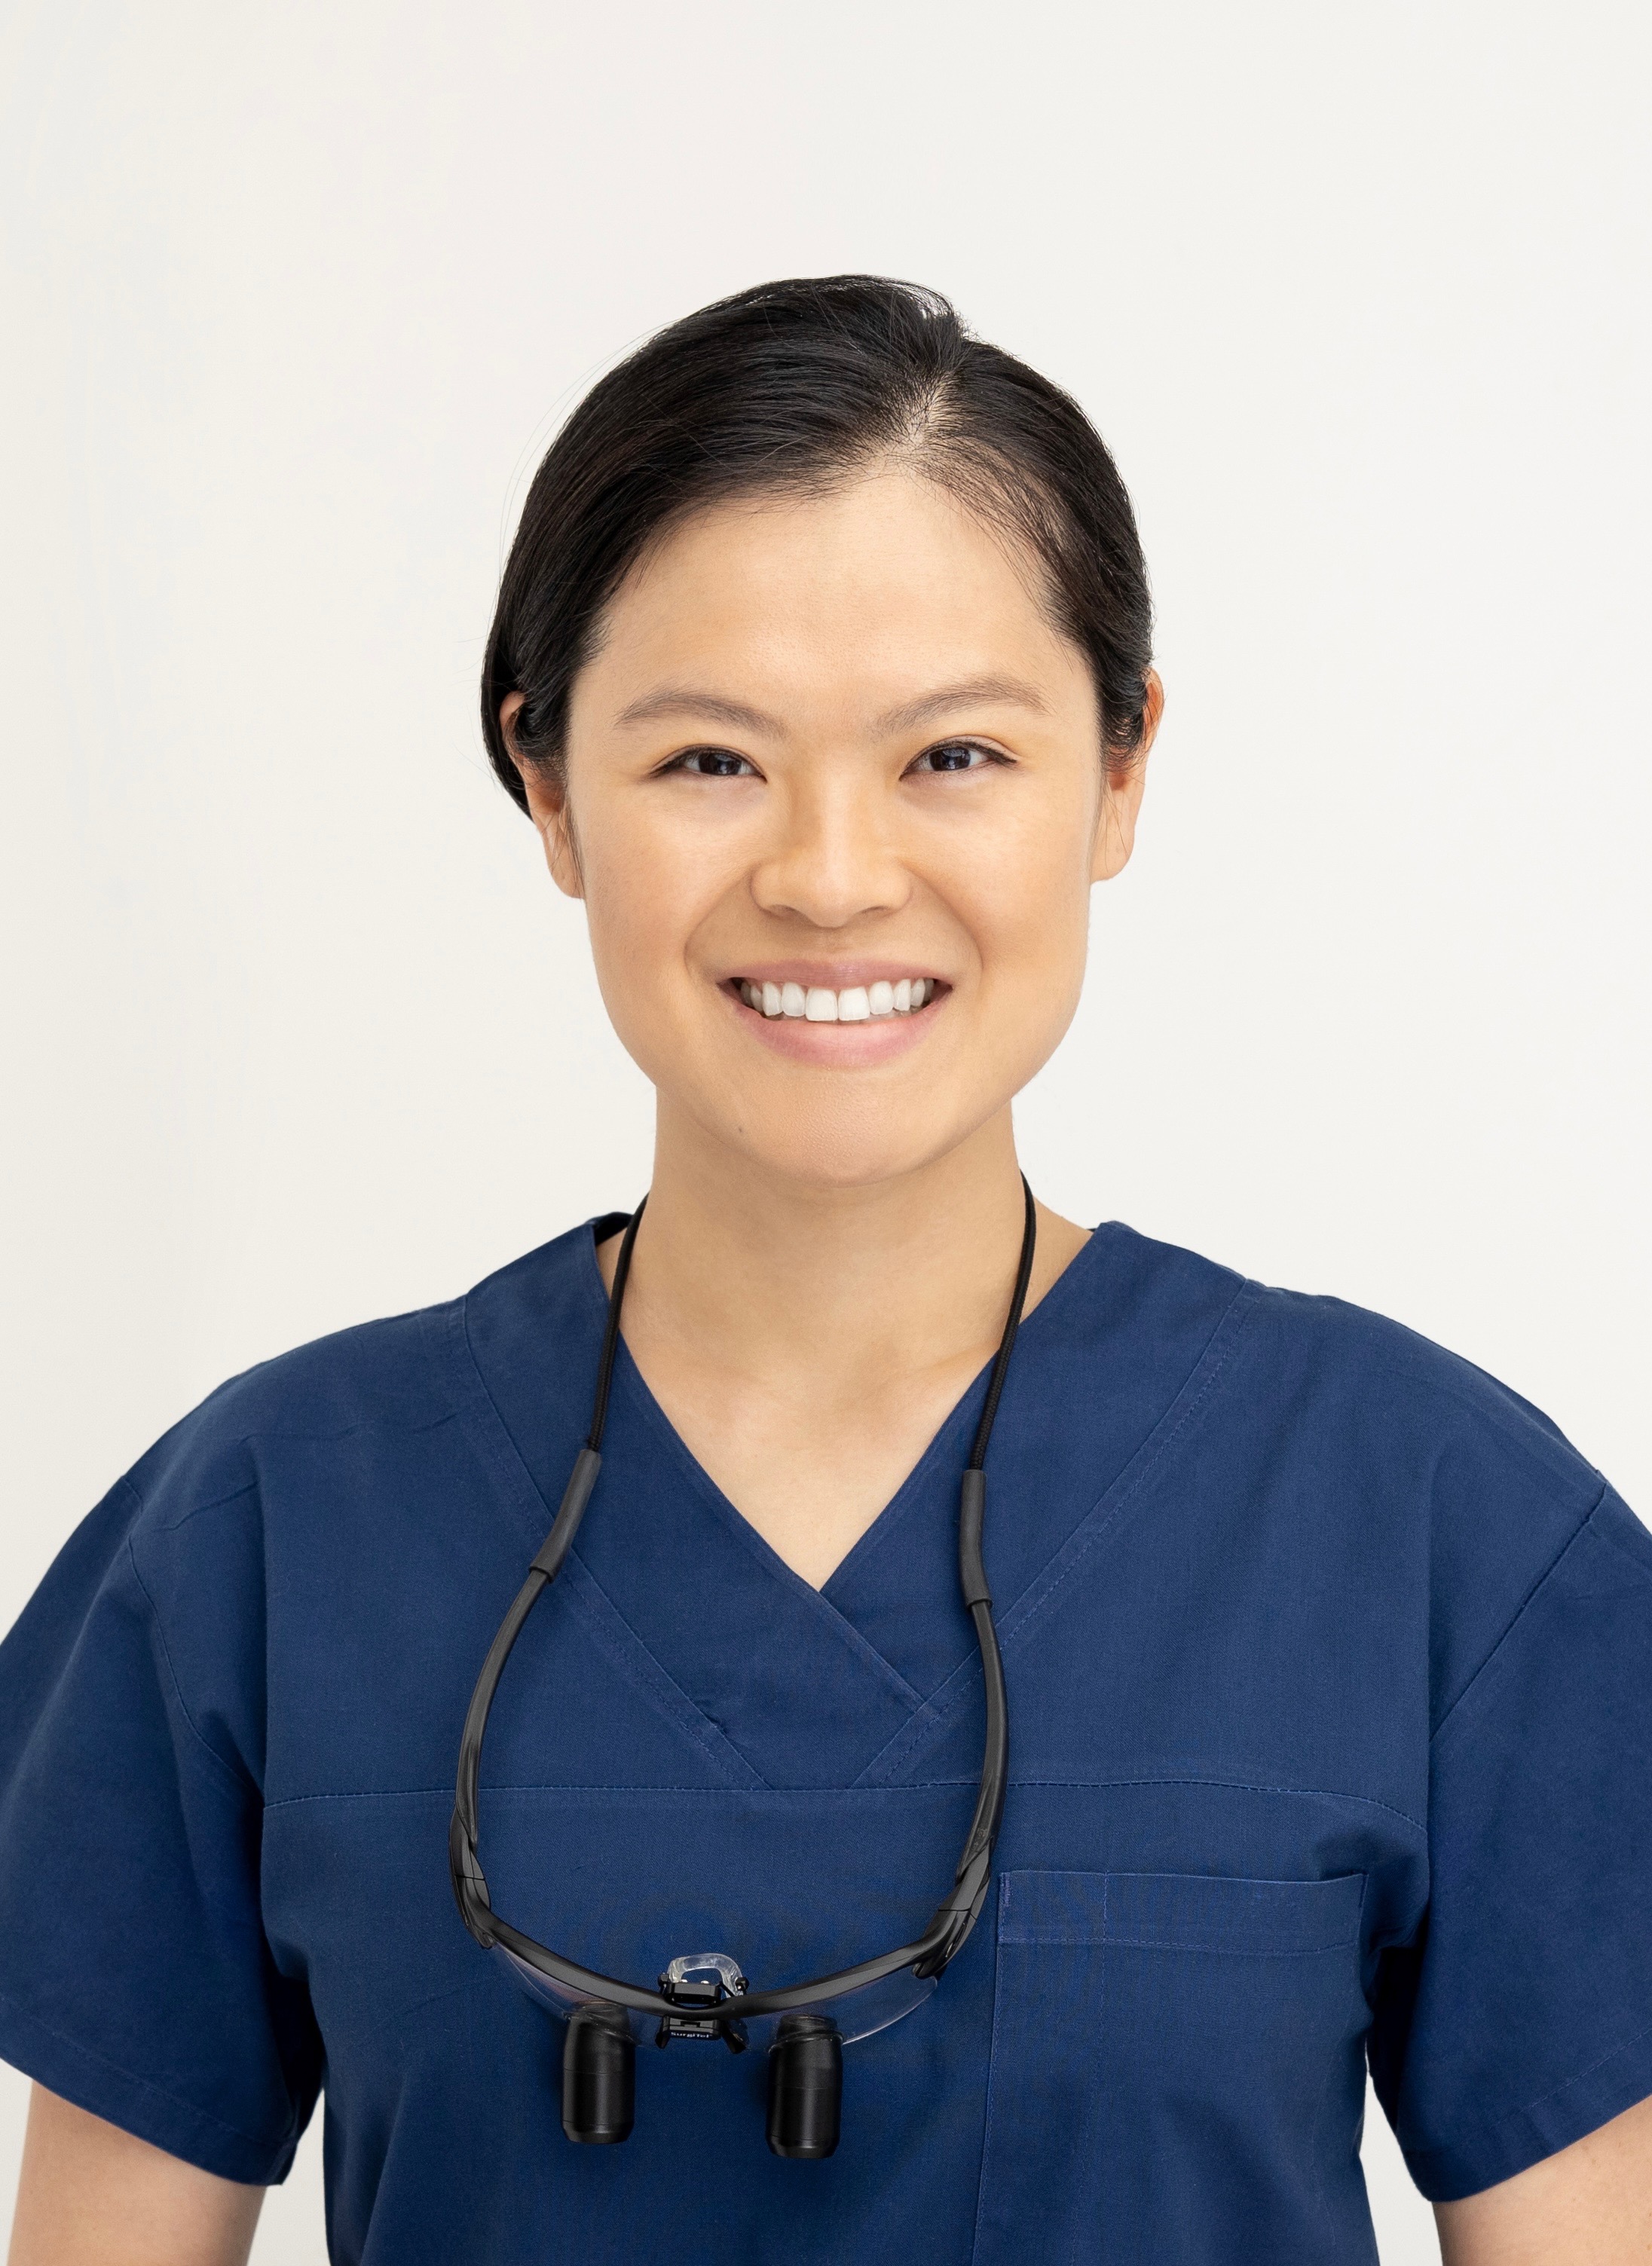 Dr Laura Wang